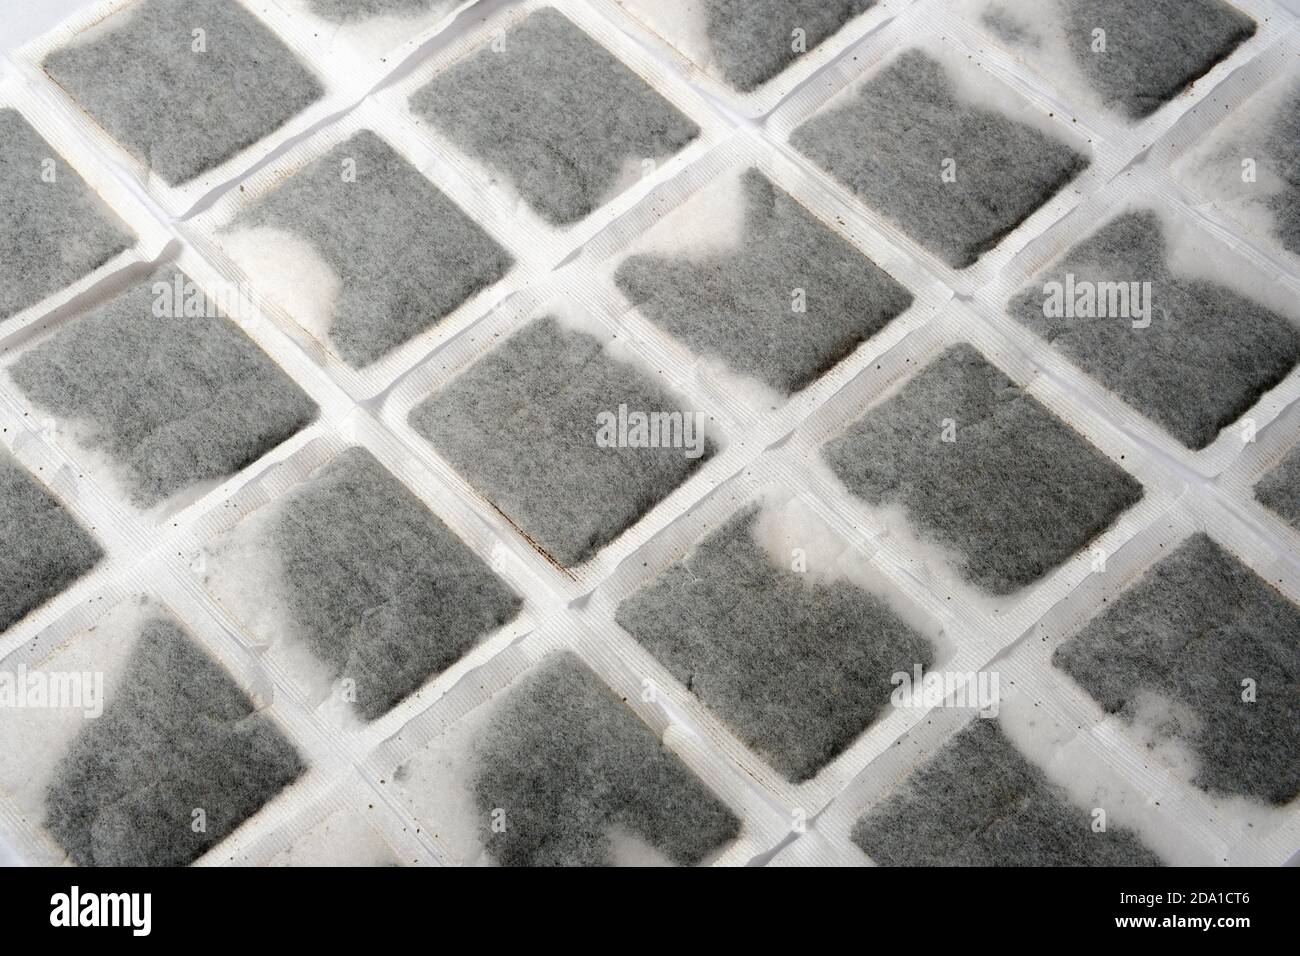 Englisches Teebeutel-Muster. Mehrere Teebeutel nebeneinander auf der flachen Oberfläche ausgerichtet. Stockfoto